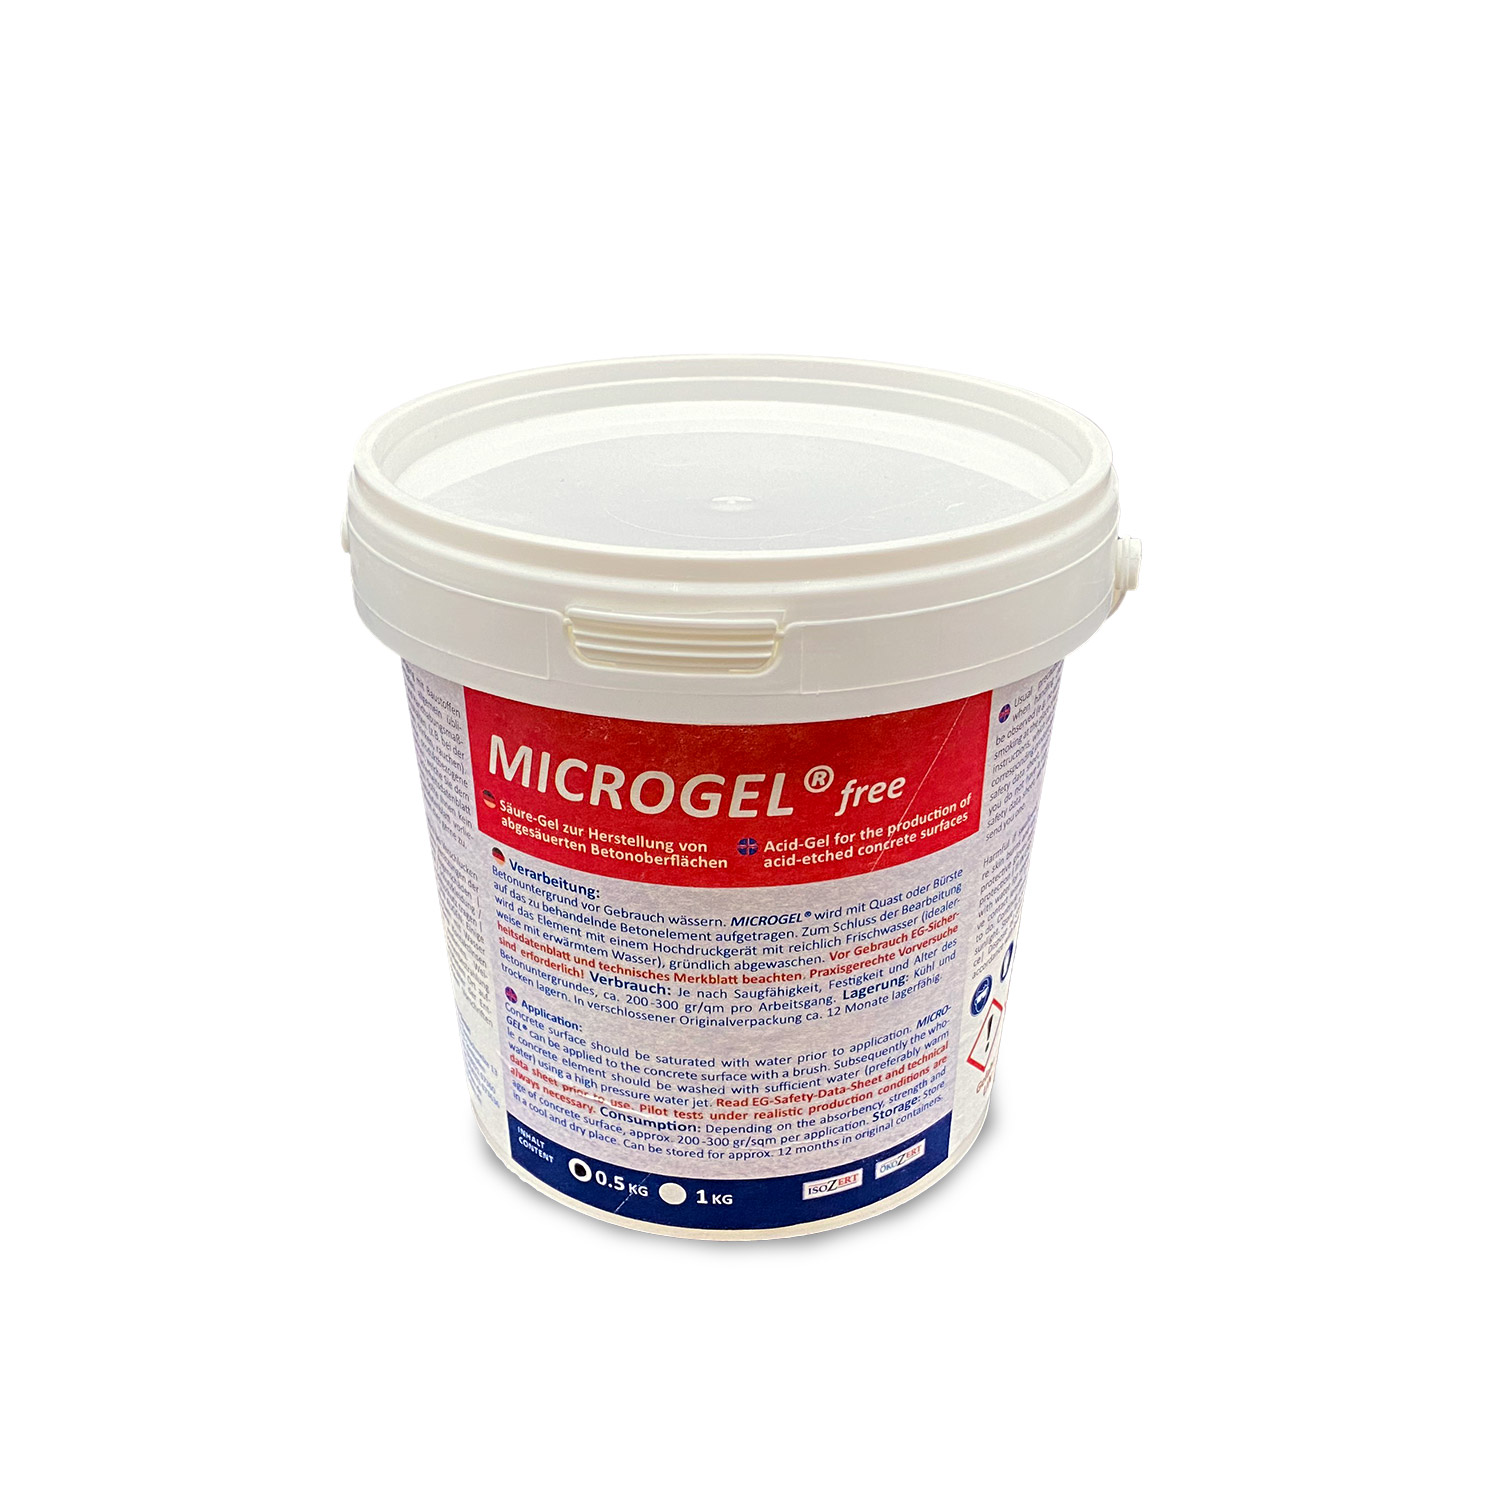 MICROGEL® free - Gel zum Absäuern